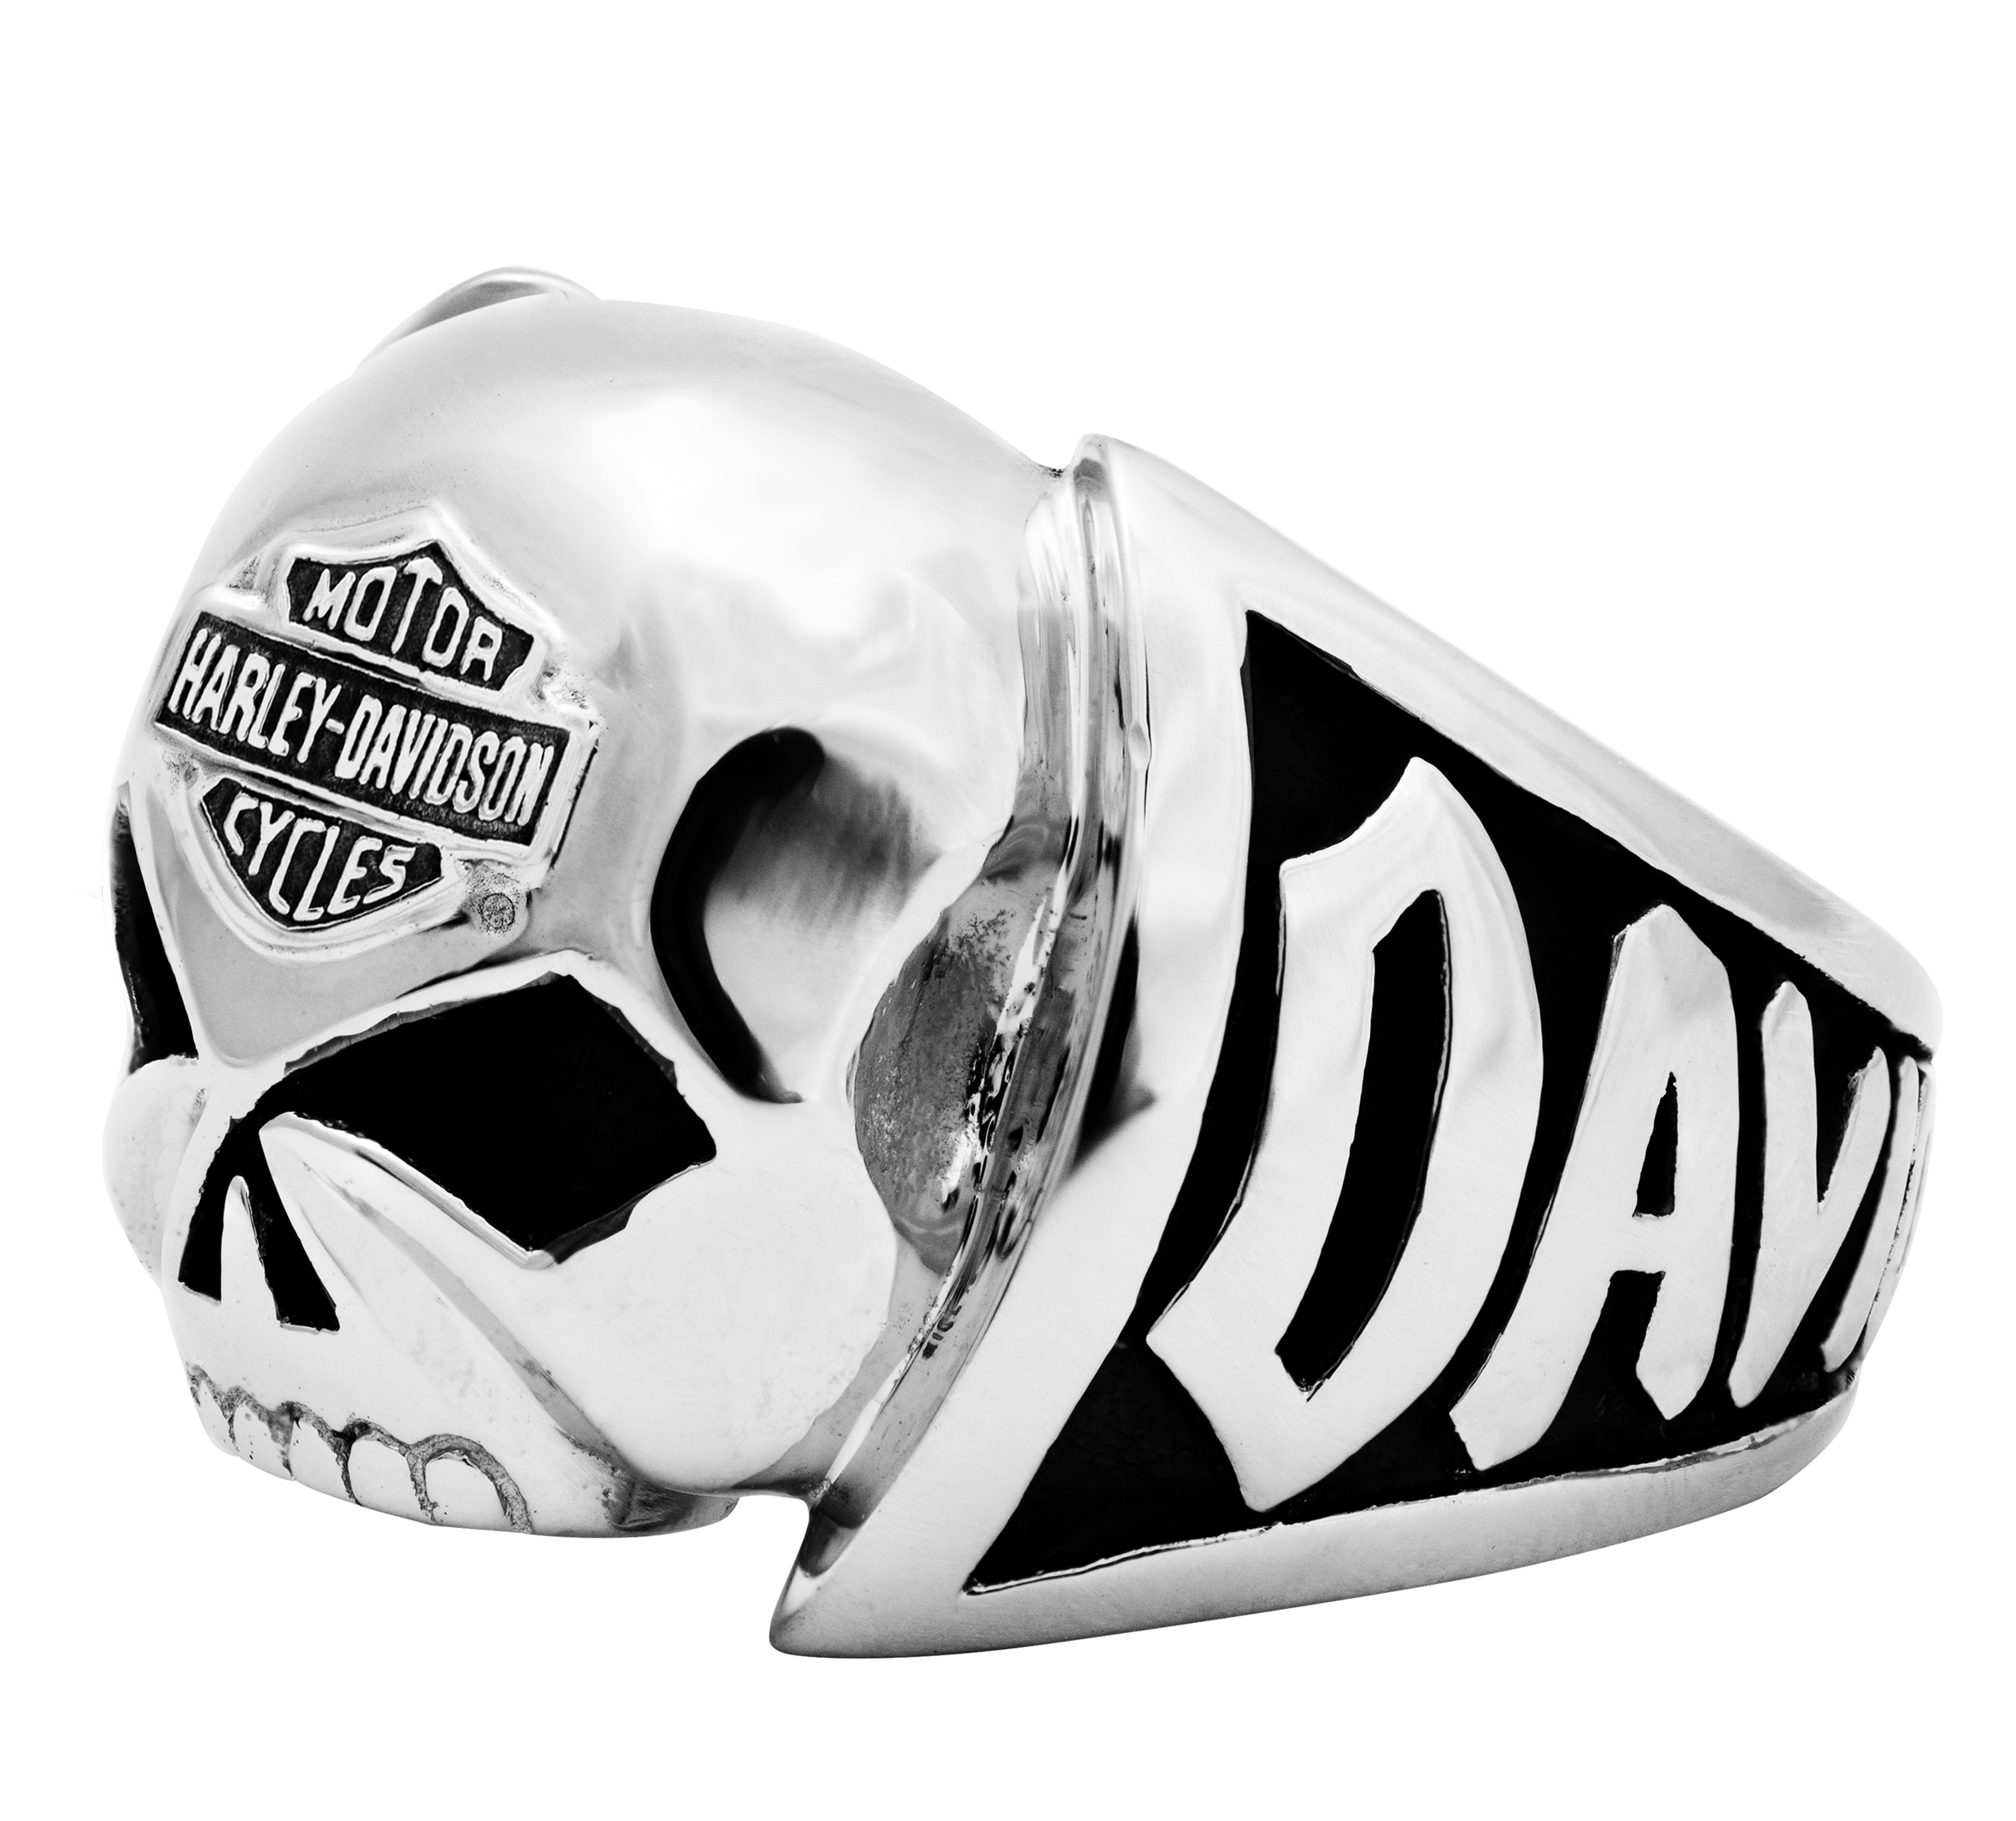 Harley Davidson Ring, Eagle Ring, Biker Ring, Motorcycle Ring, Statement  Ring | eBay